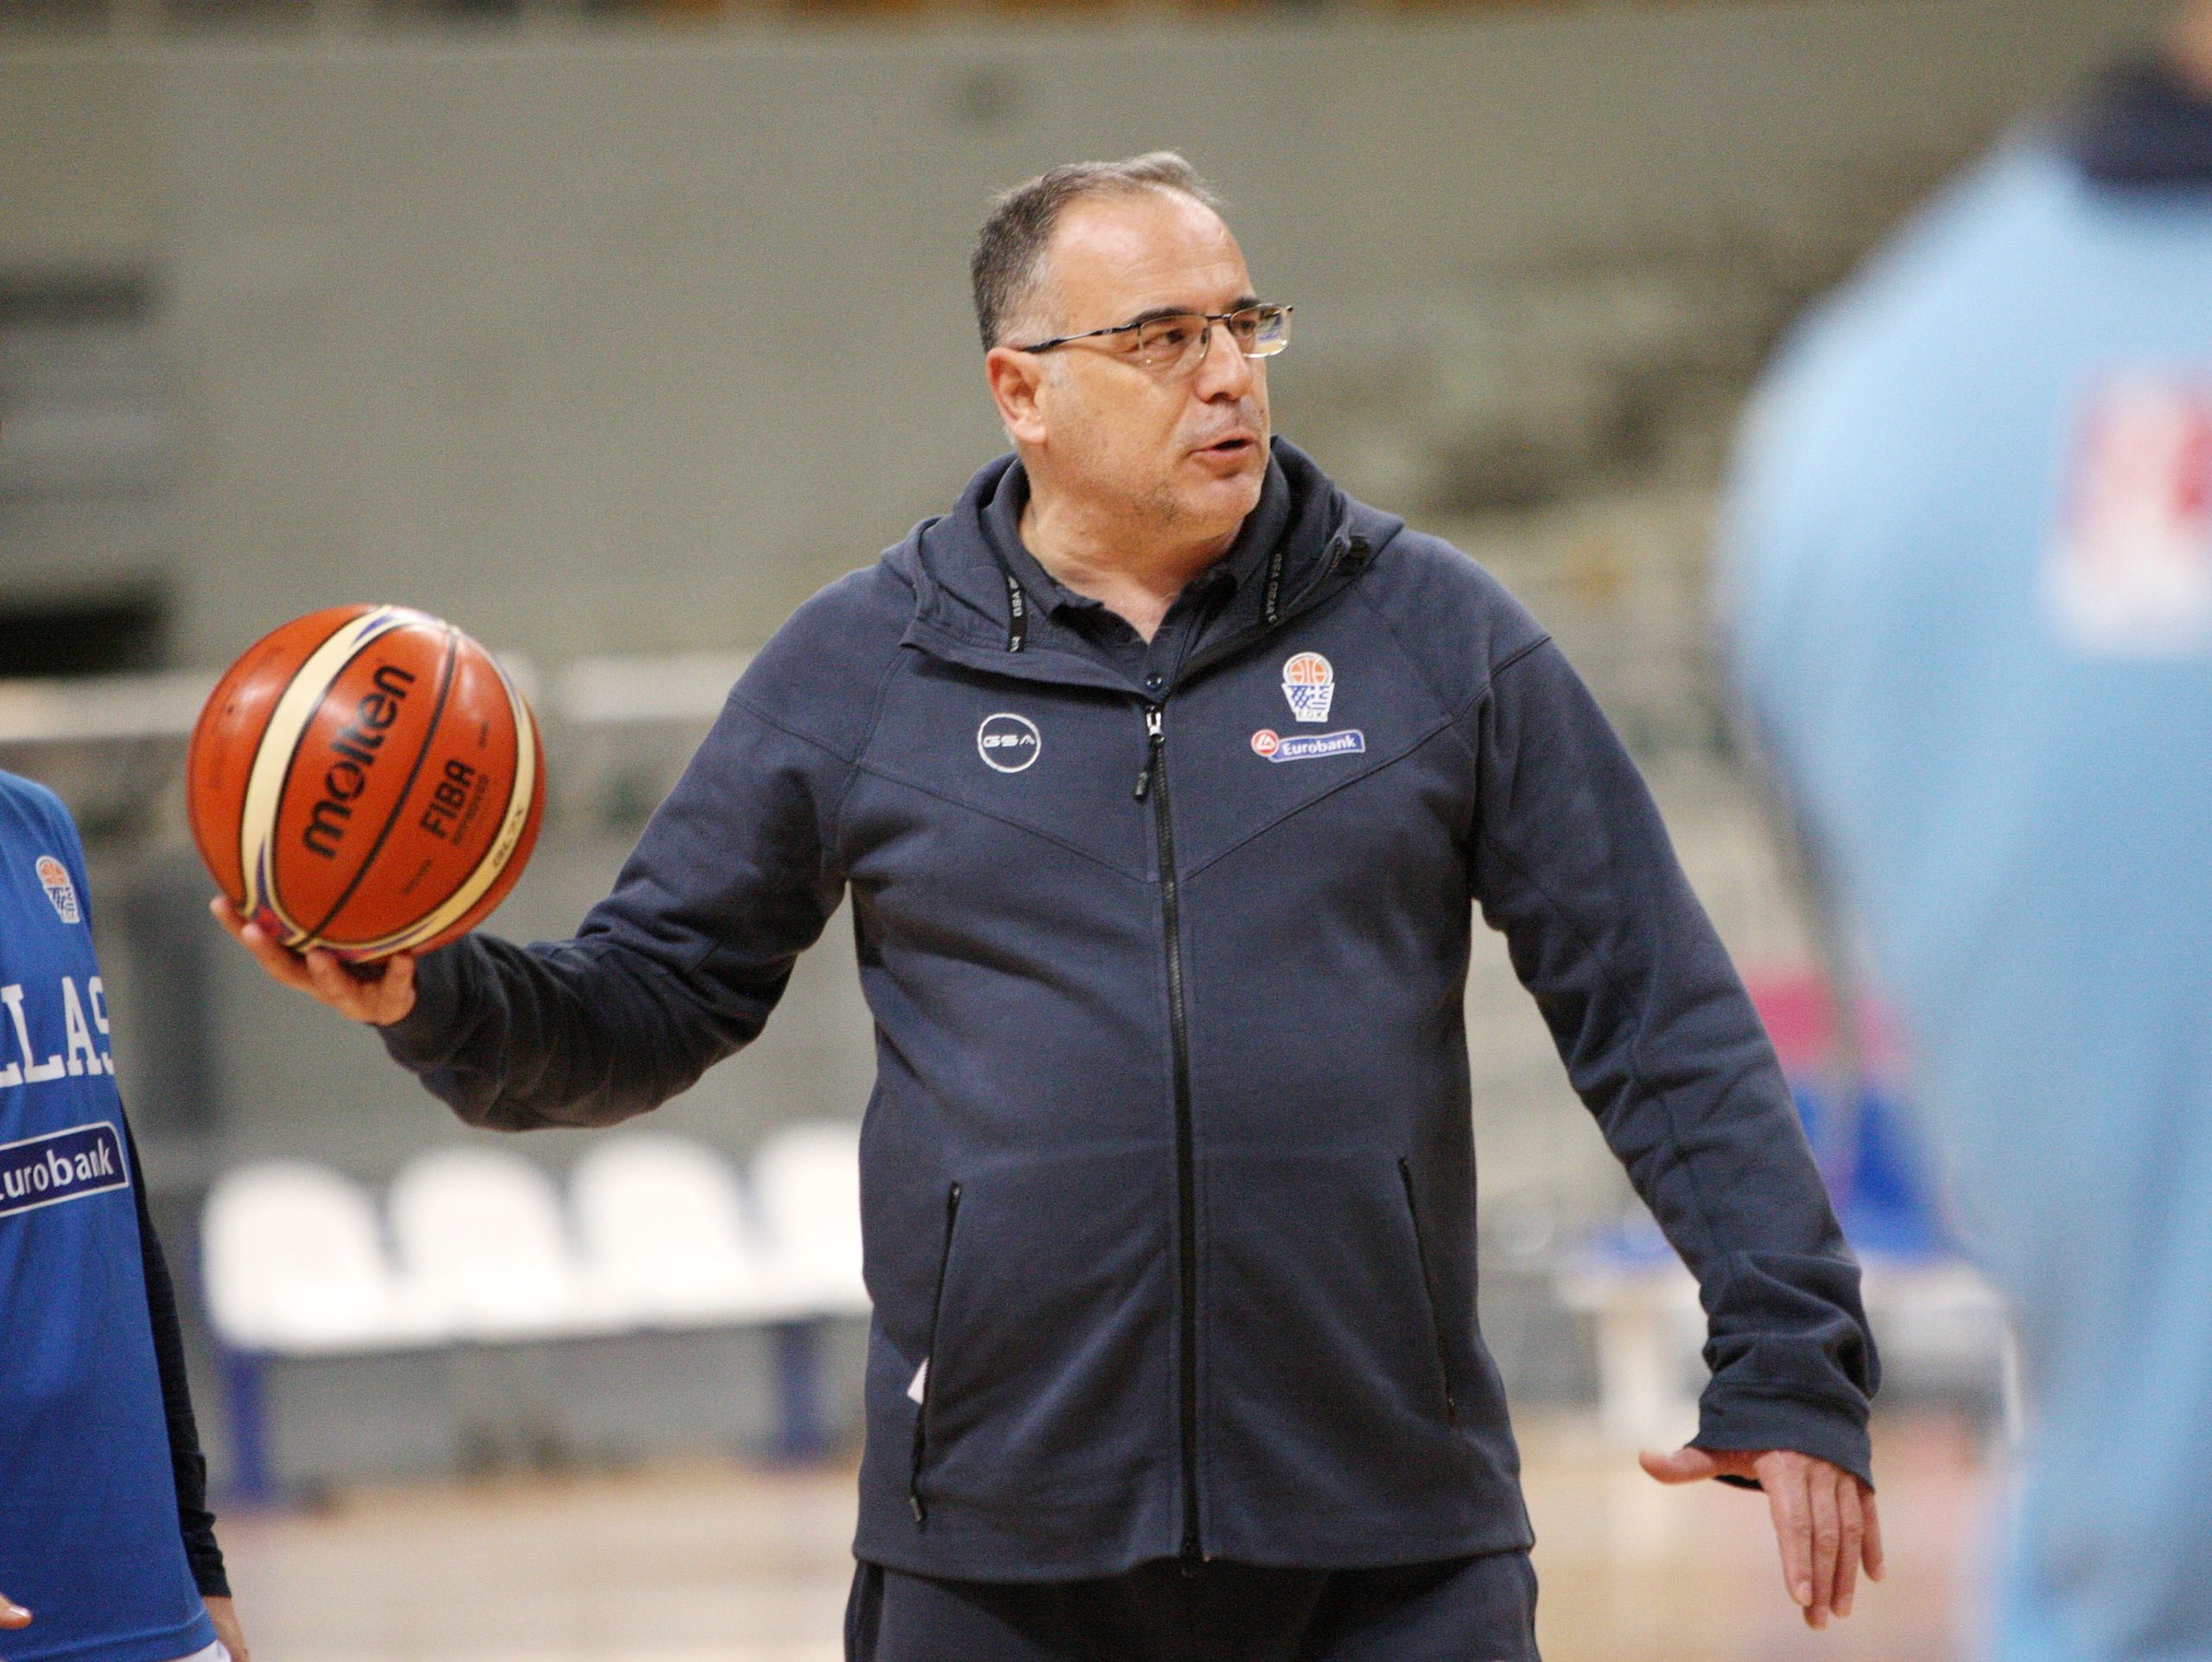 Σκουρτόπουλος: «Οι συνθήκες δεν μας επιτρέπουν να έχουμε την ομάδα που επιθυμούμε»